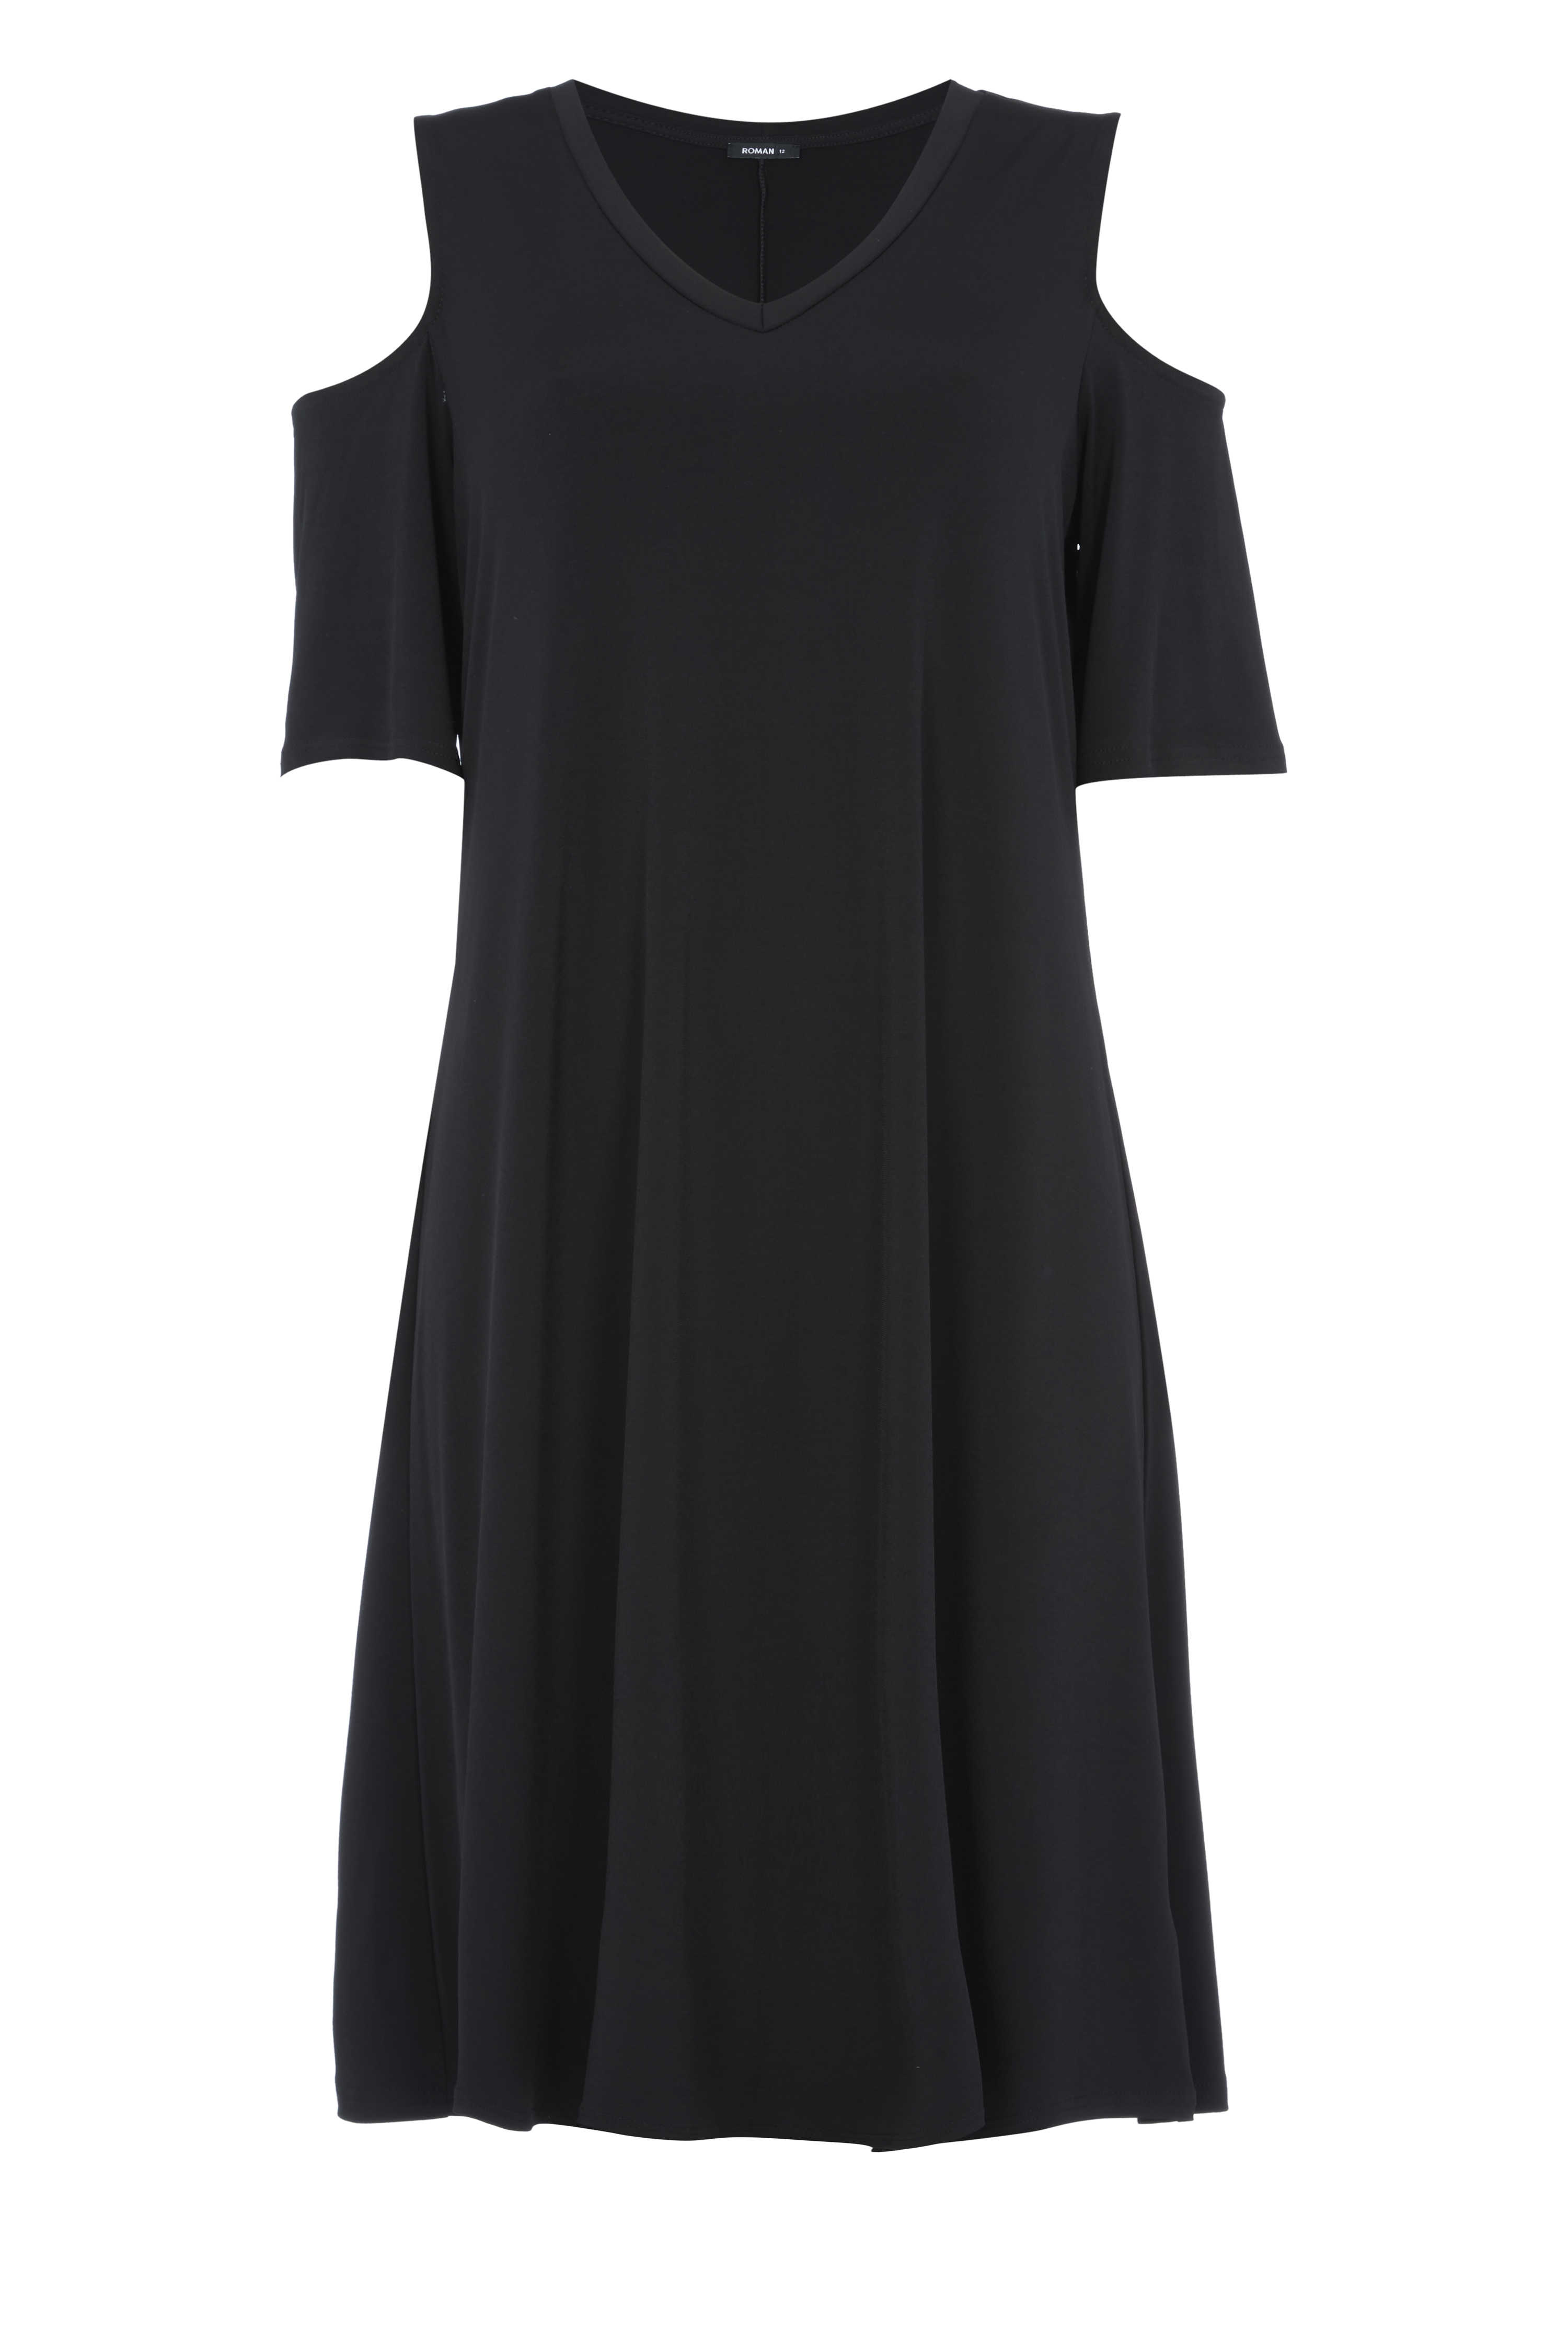 Online Exclusive Cold Shoulder Swing Dress in BLACK - Roman Originals UK